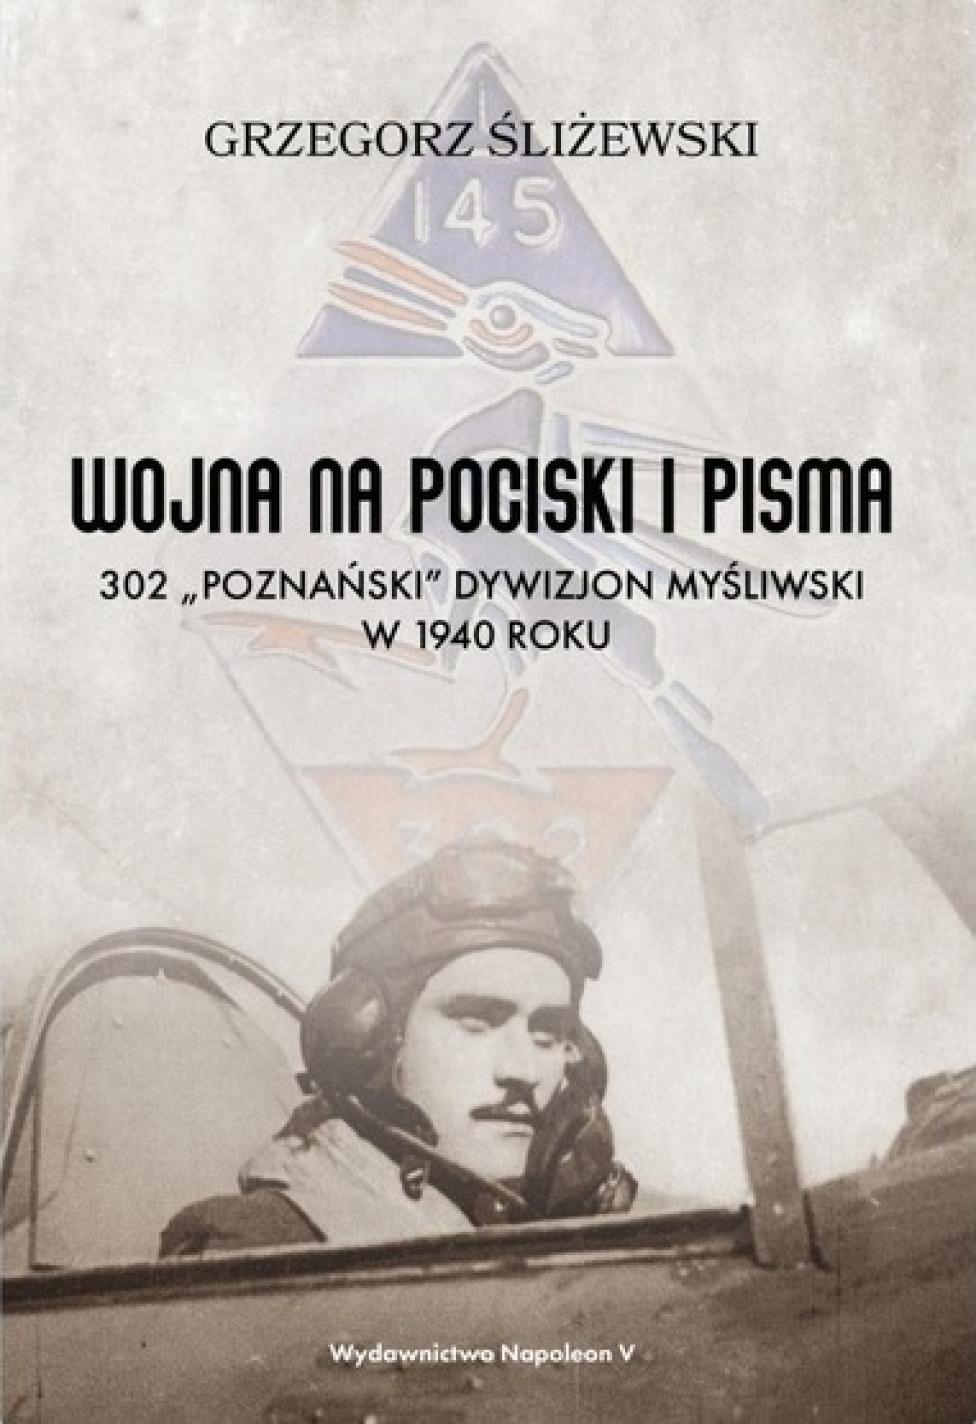 Książka "Wojna na pociski i pisma. 302 „Poznański” Dywizjon Myśliwski w 1940 roku" (fot. napoleonv.pl)